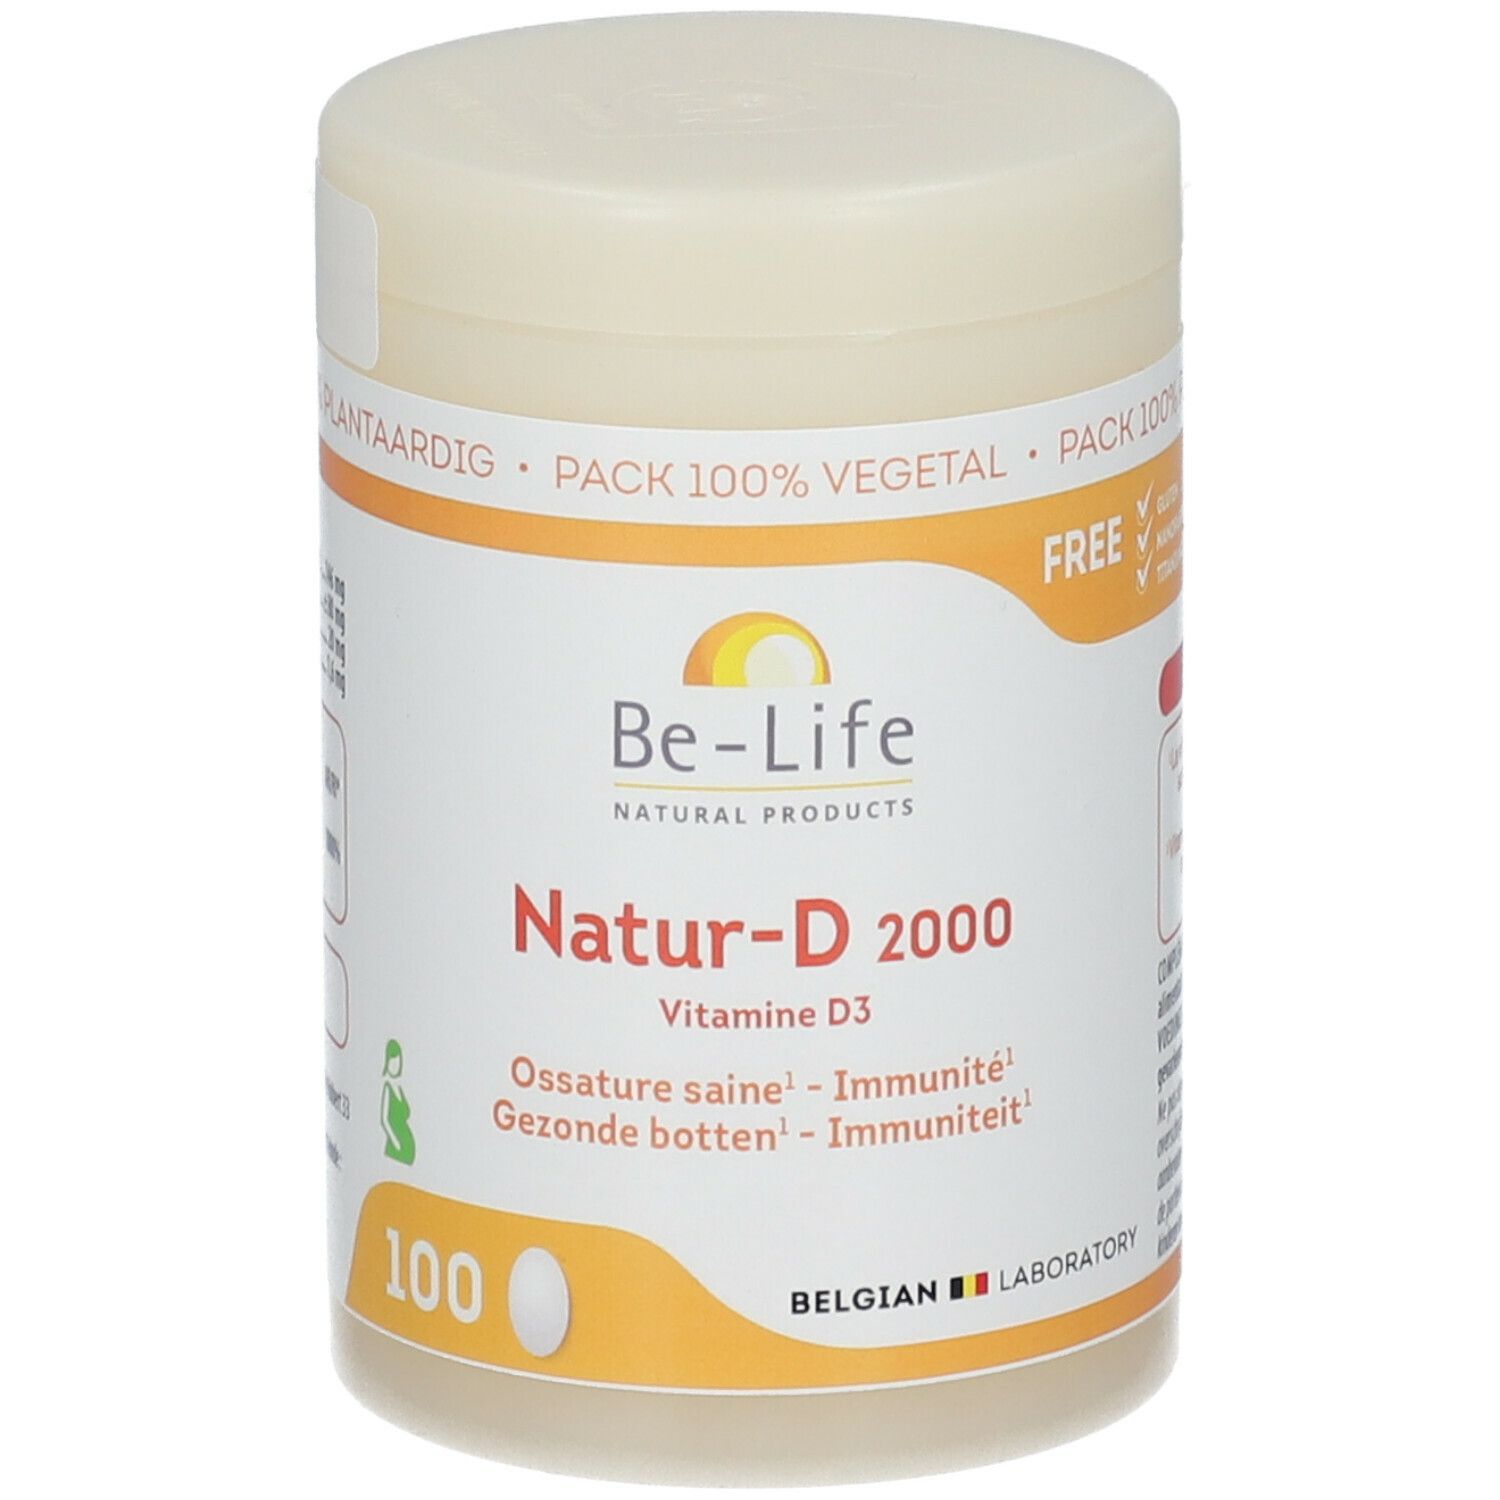 Be-Life Naturel-D 800